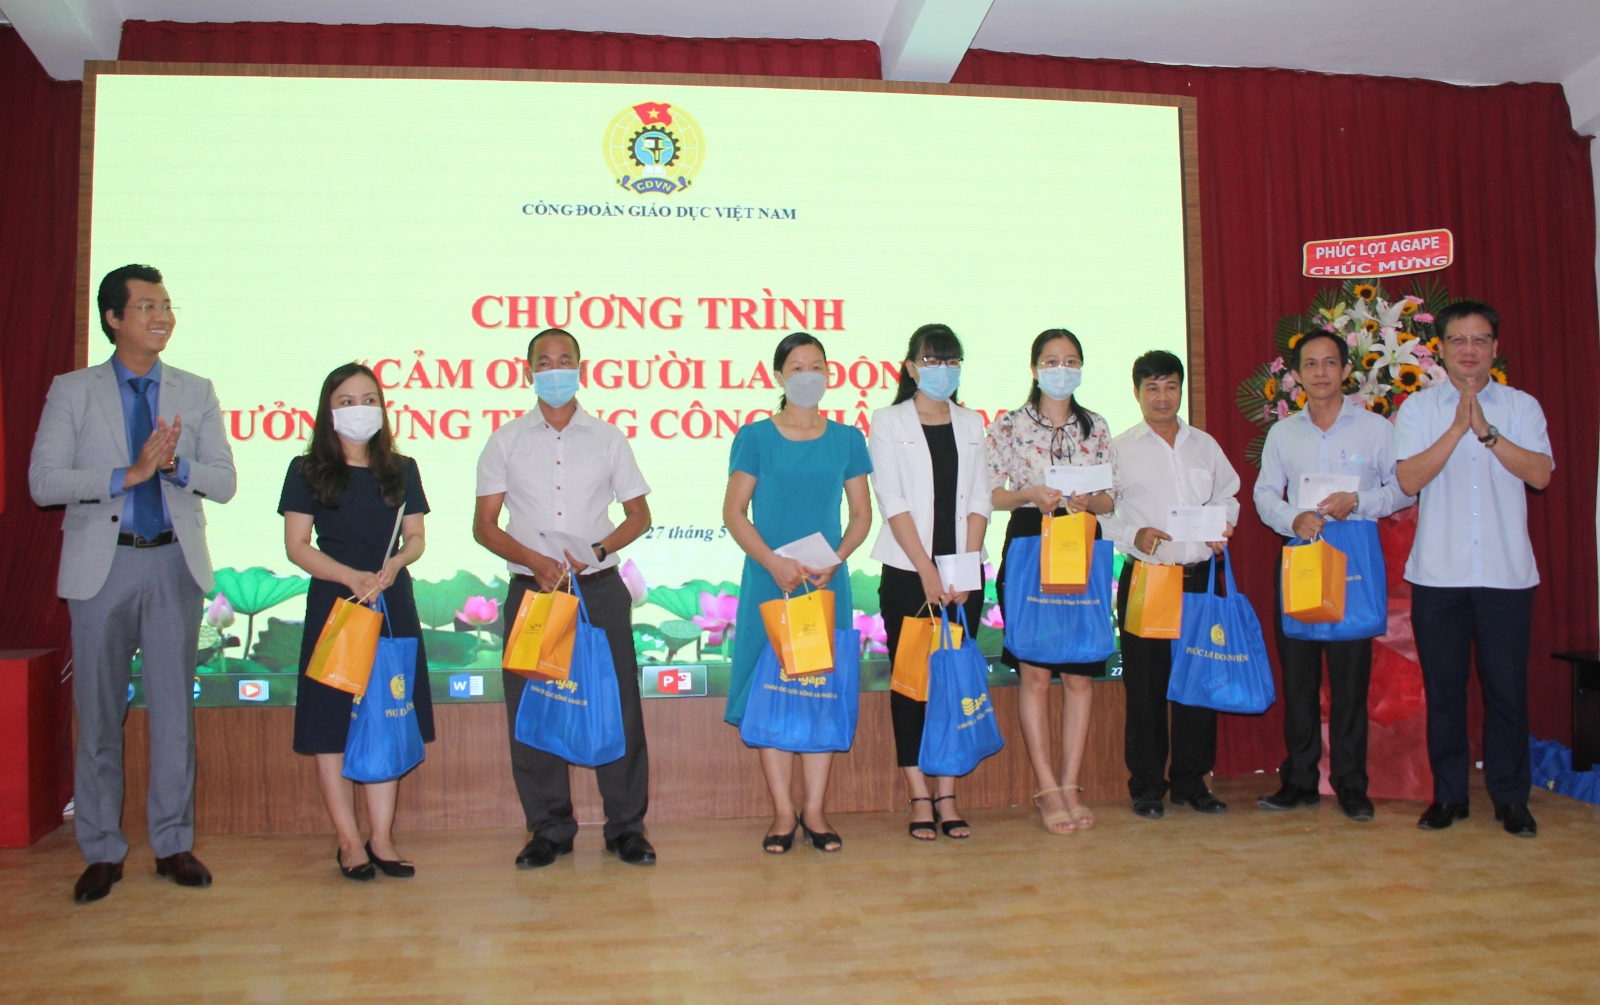 Công đoàn Giáo dục Việt Nam: Nhiều hoạt động ý nghĩa trong Chương trình “Cảm ơn người lao động”